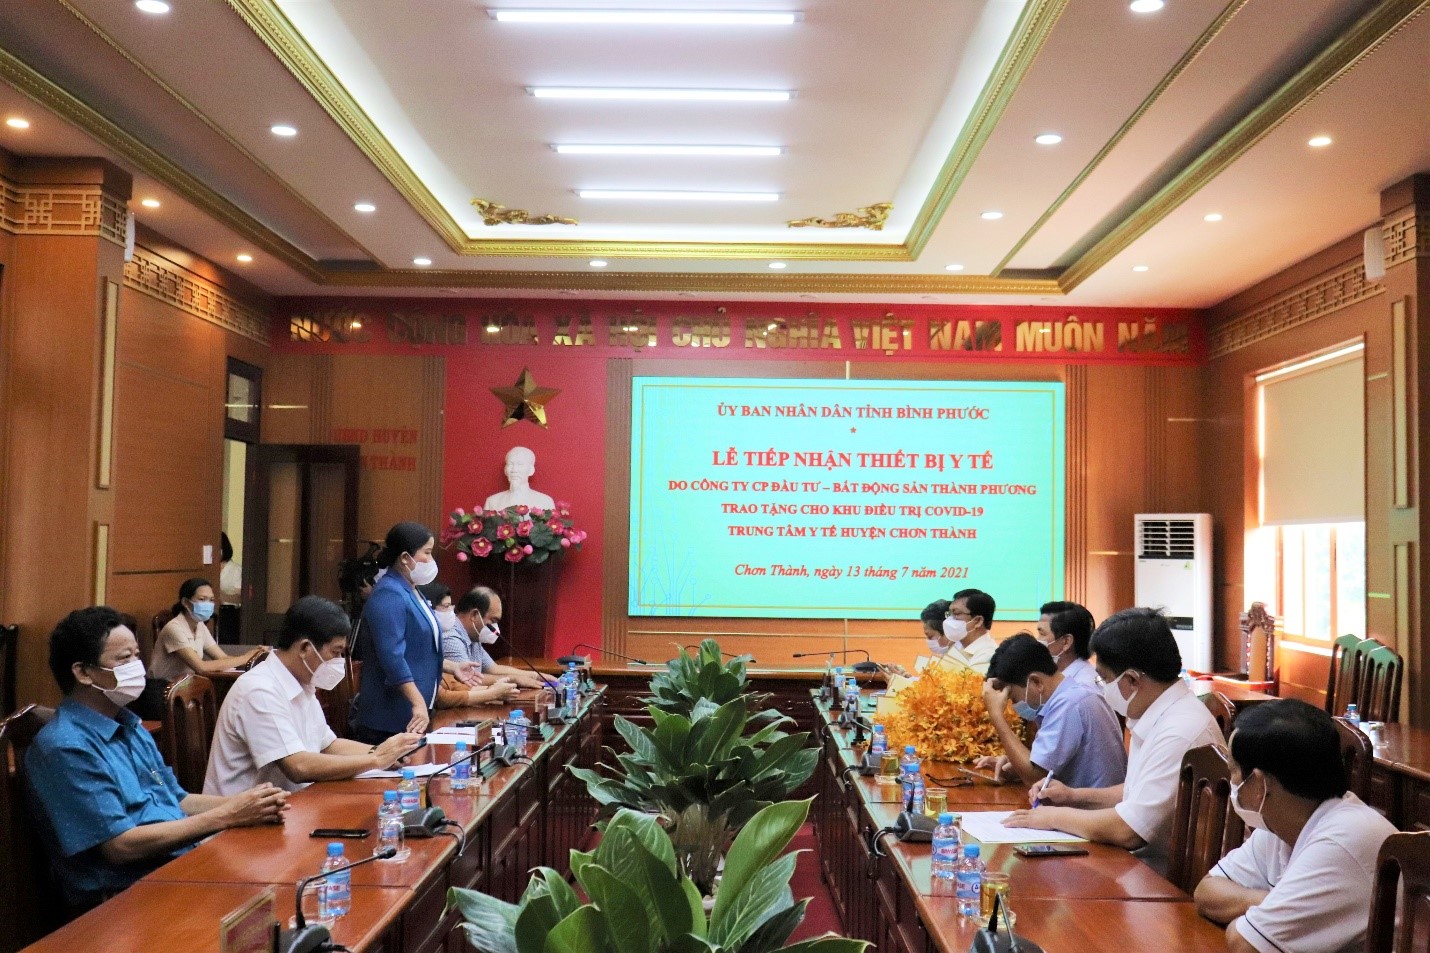 Bà Trần Tuệ Hiền - Chủ tịch UBND tỉnh Bình Phước phát biểu tại chương trình